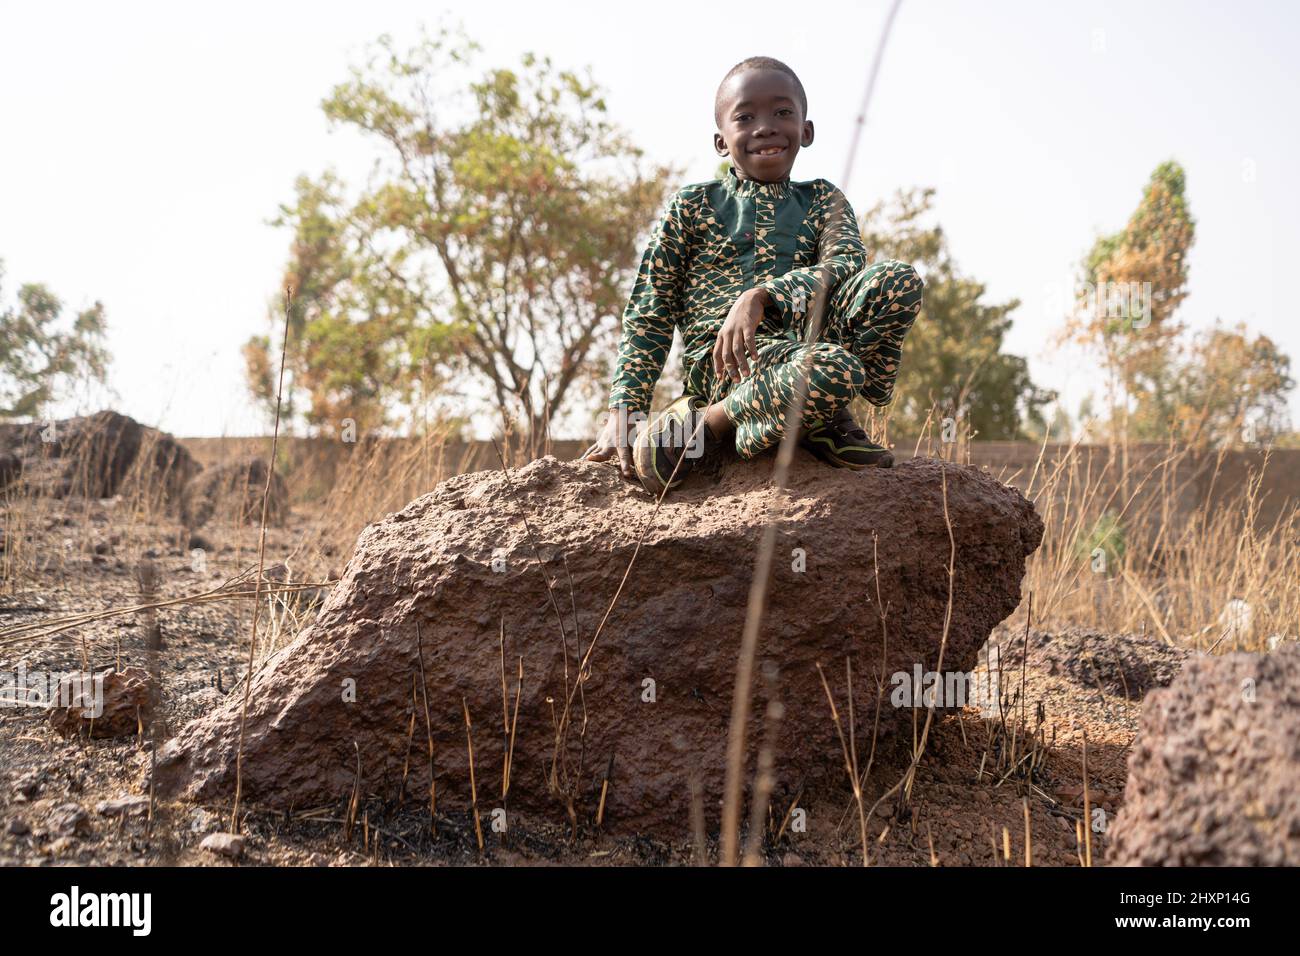 Lindo niño africano con una gran sonrisa sentado en una roca en medio de un páramo degradado y árido; problema ambiental Foto de stock